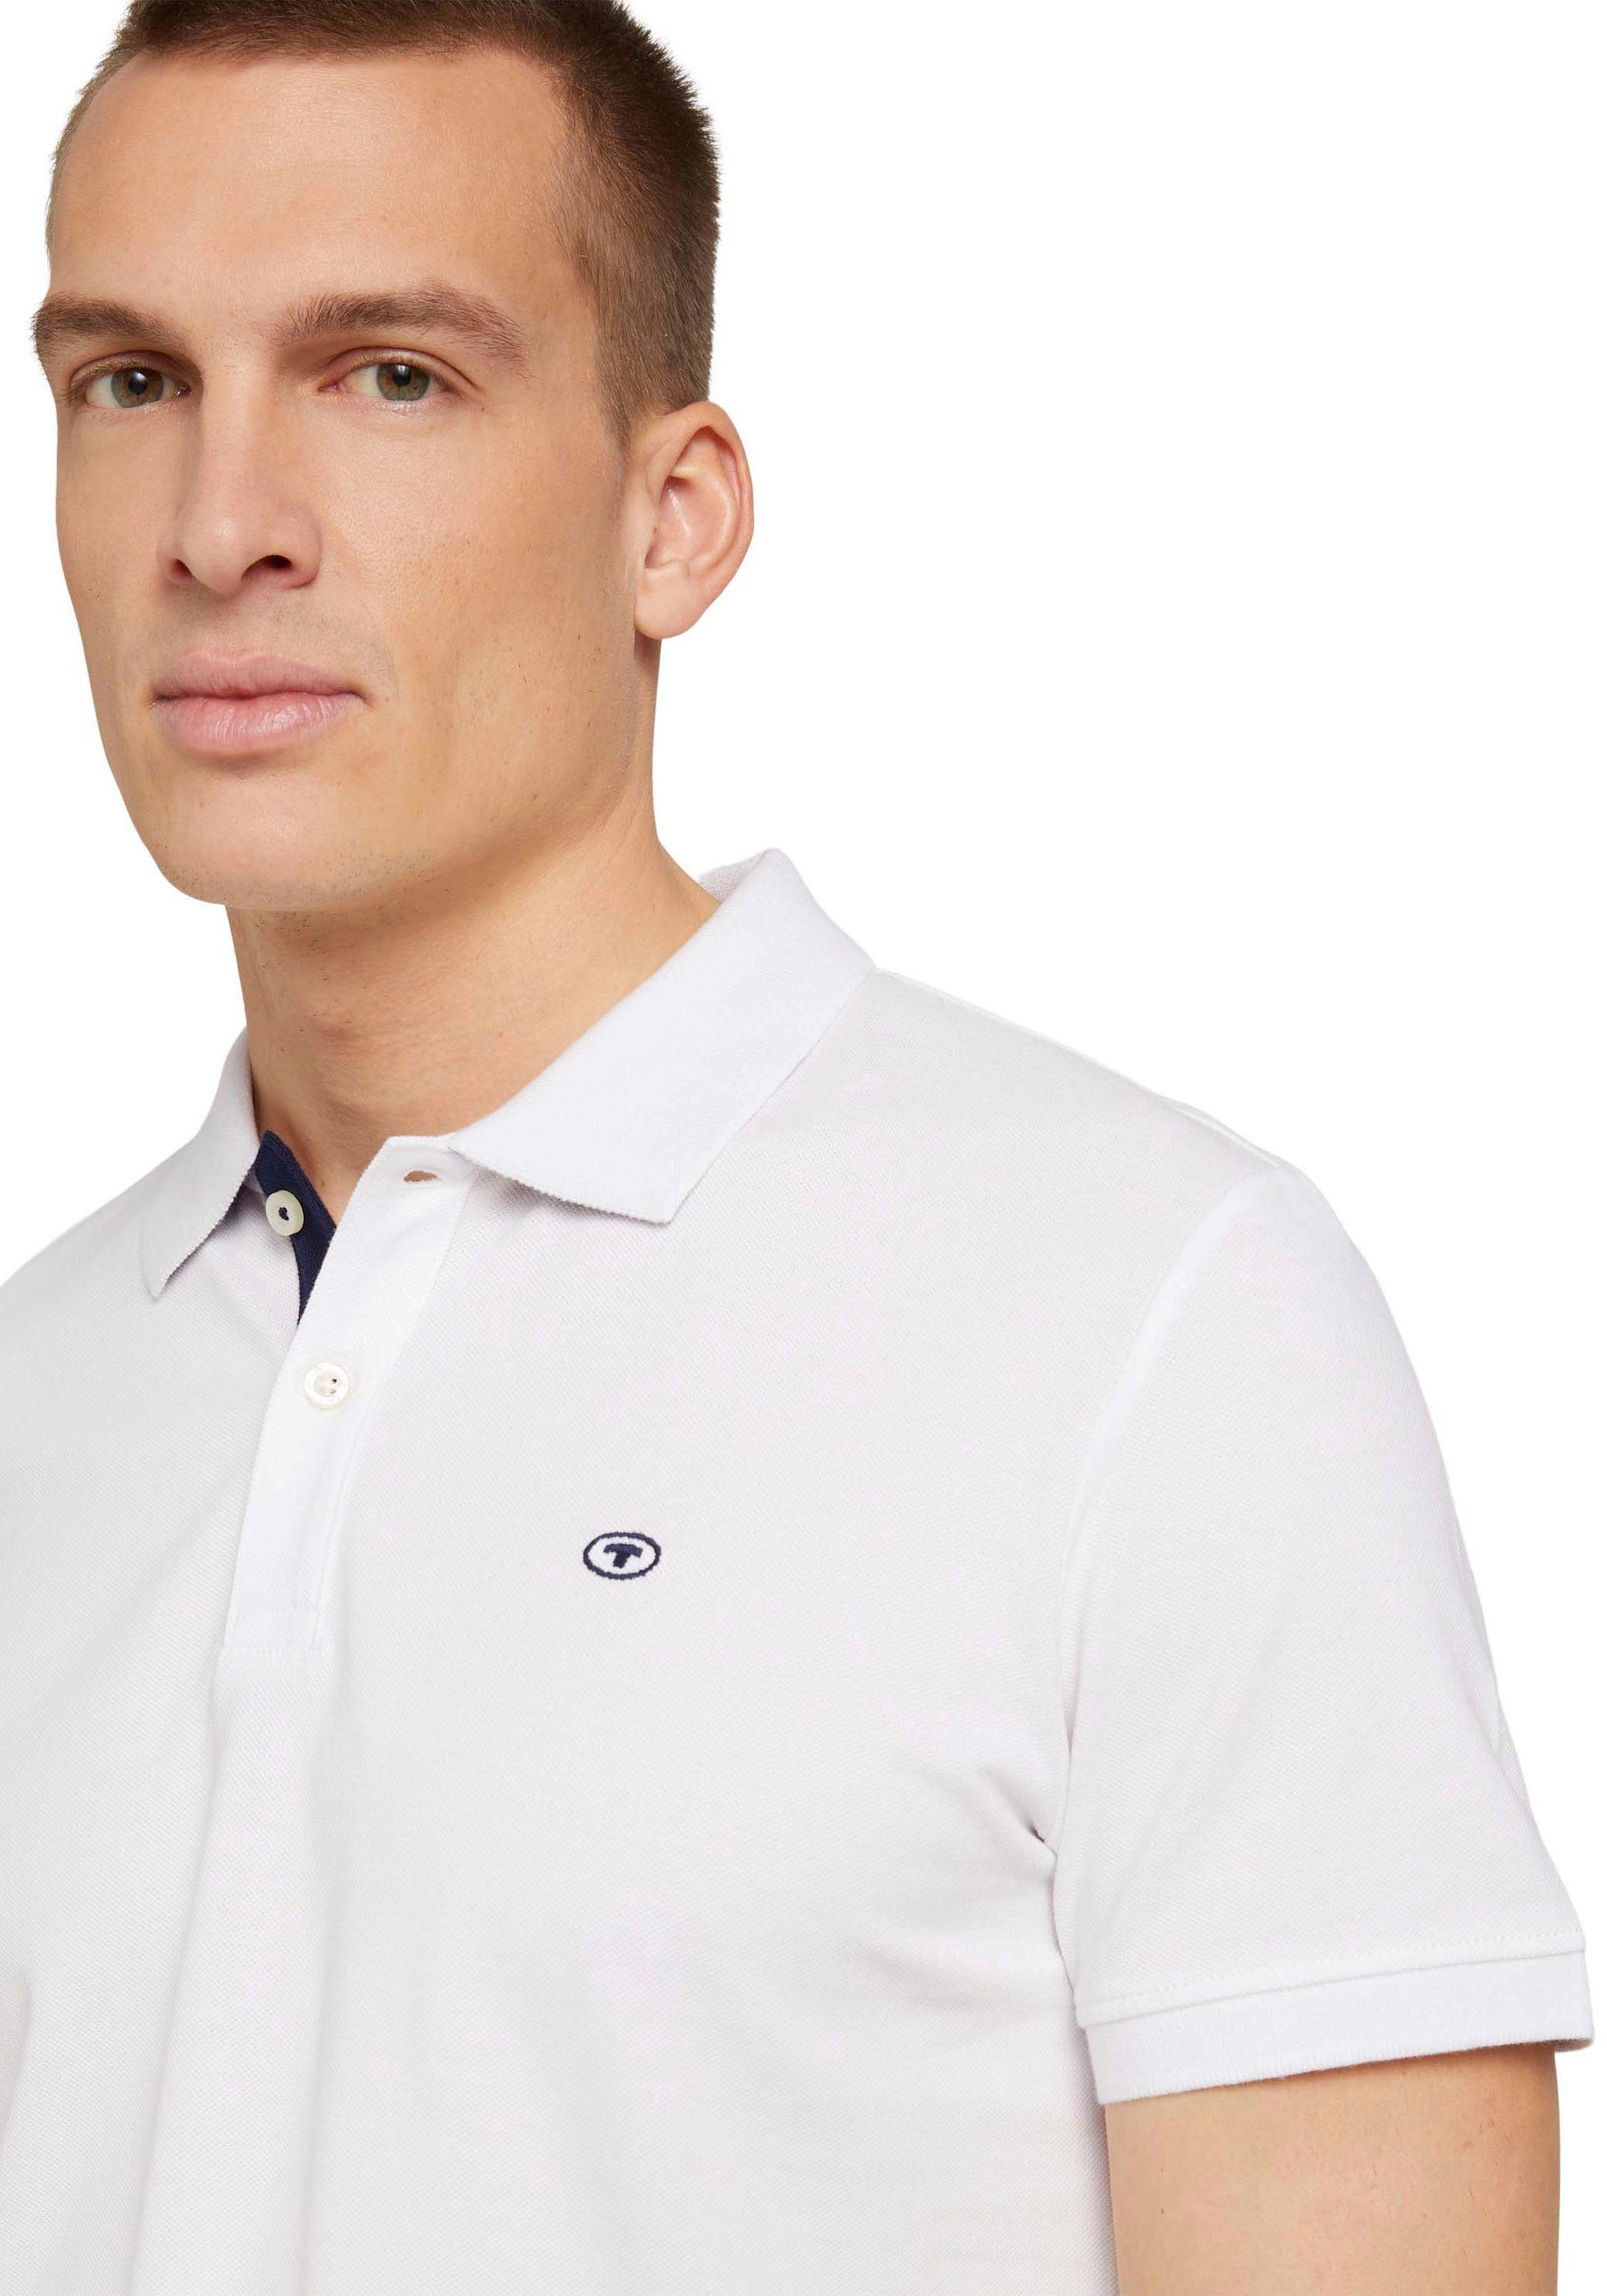 Logo TAILOR und Poloshirt kleinem mit TOM kontrastfarbener weiß Knopfleiste